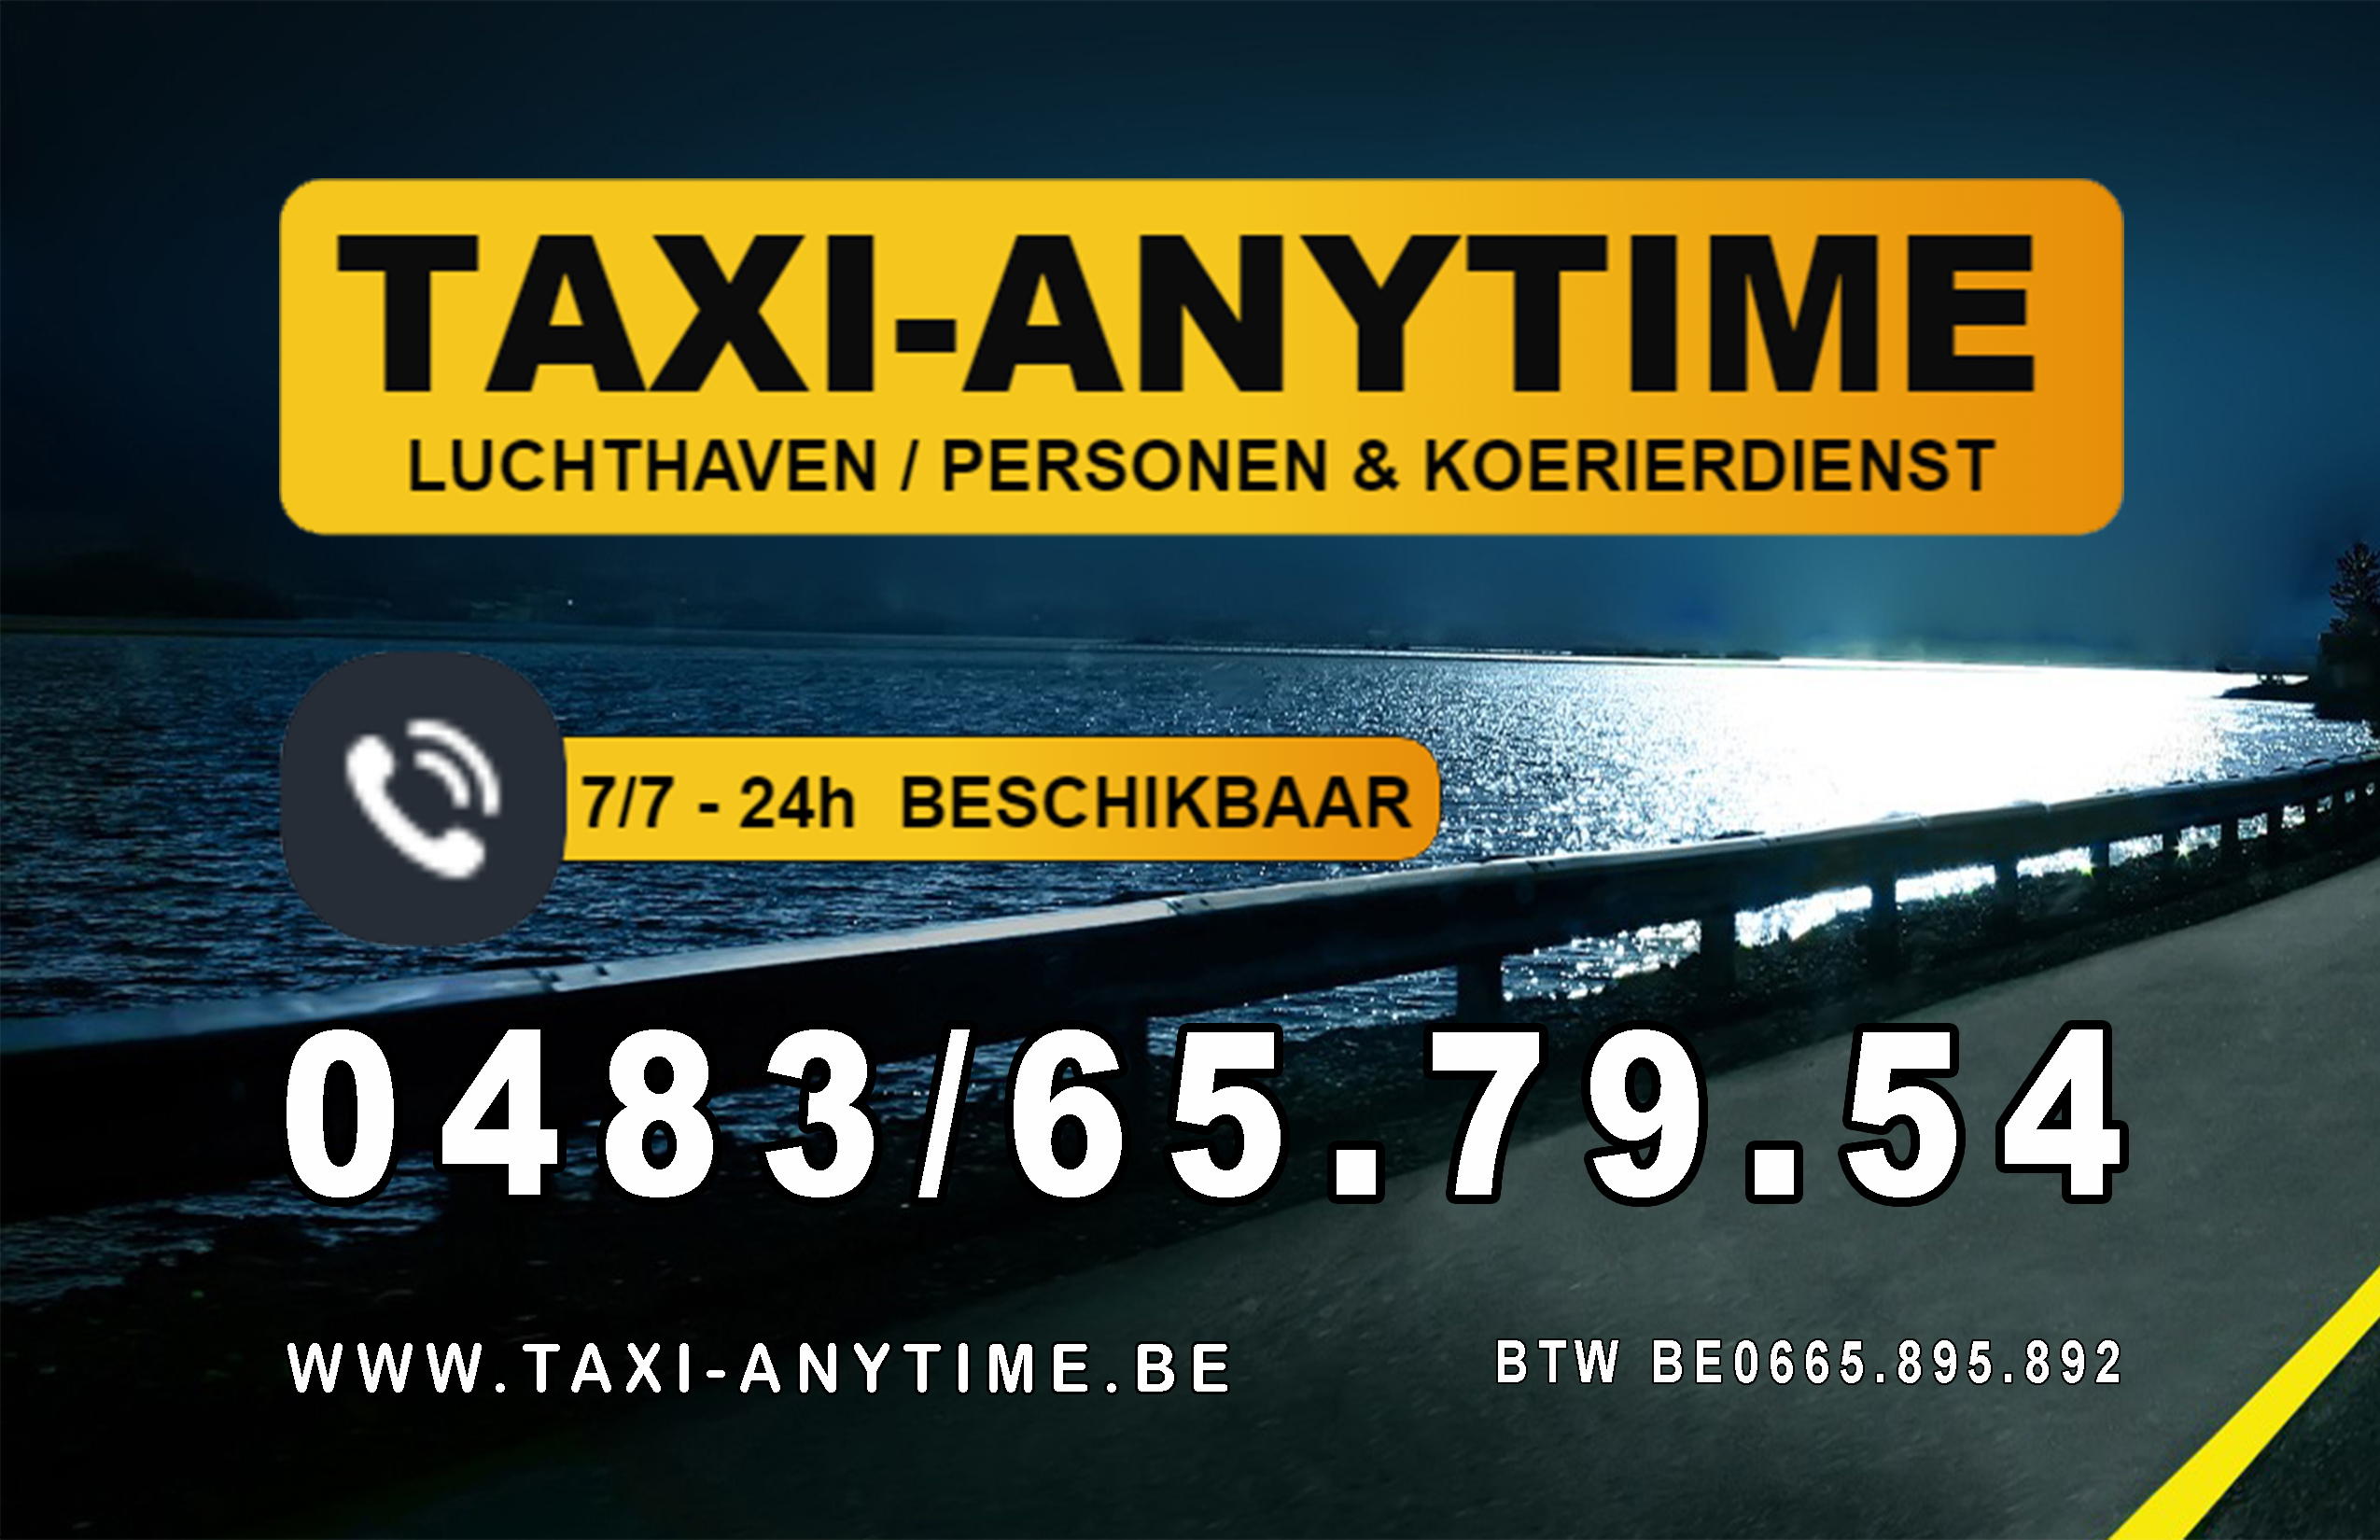 taxibedrijven met luchthavenvervoer Ieper anytime taxi